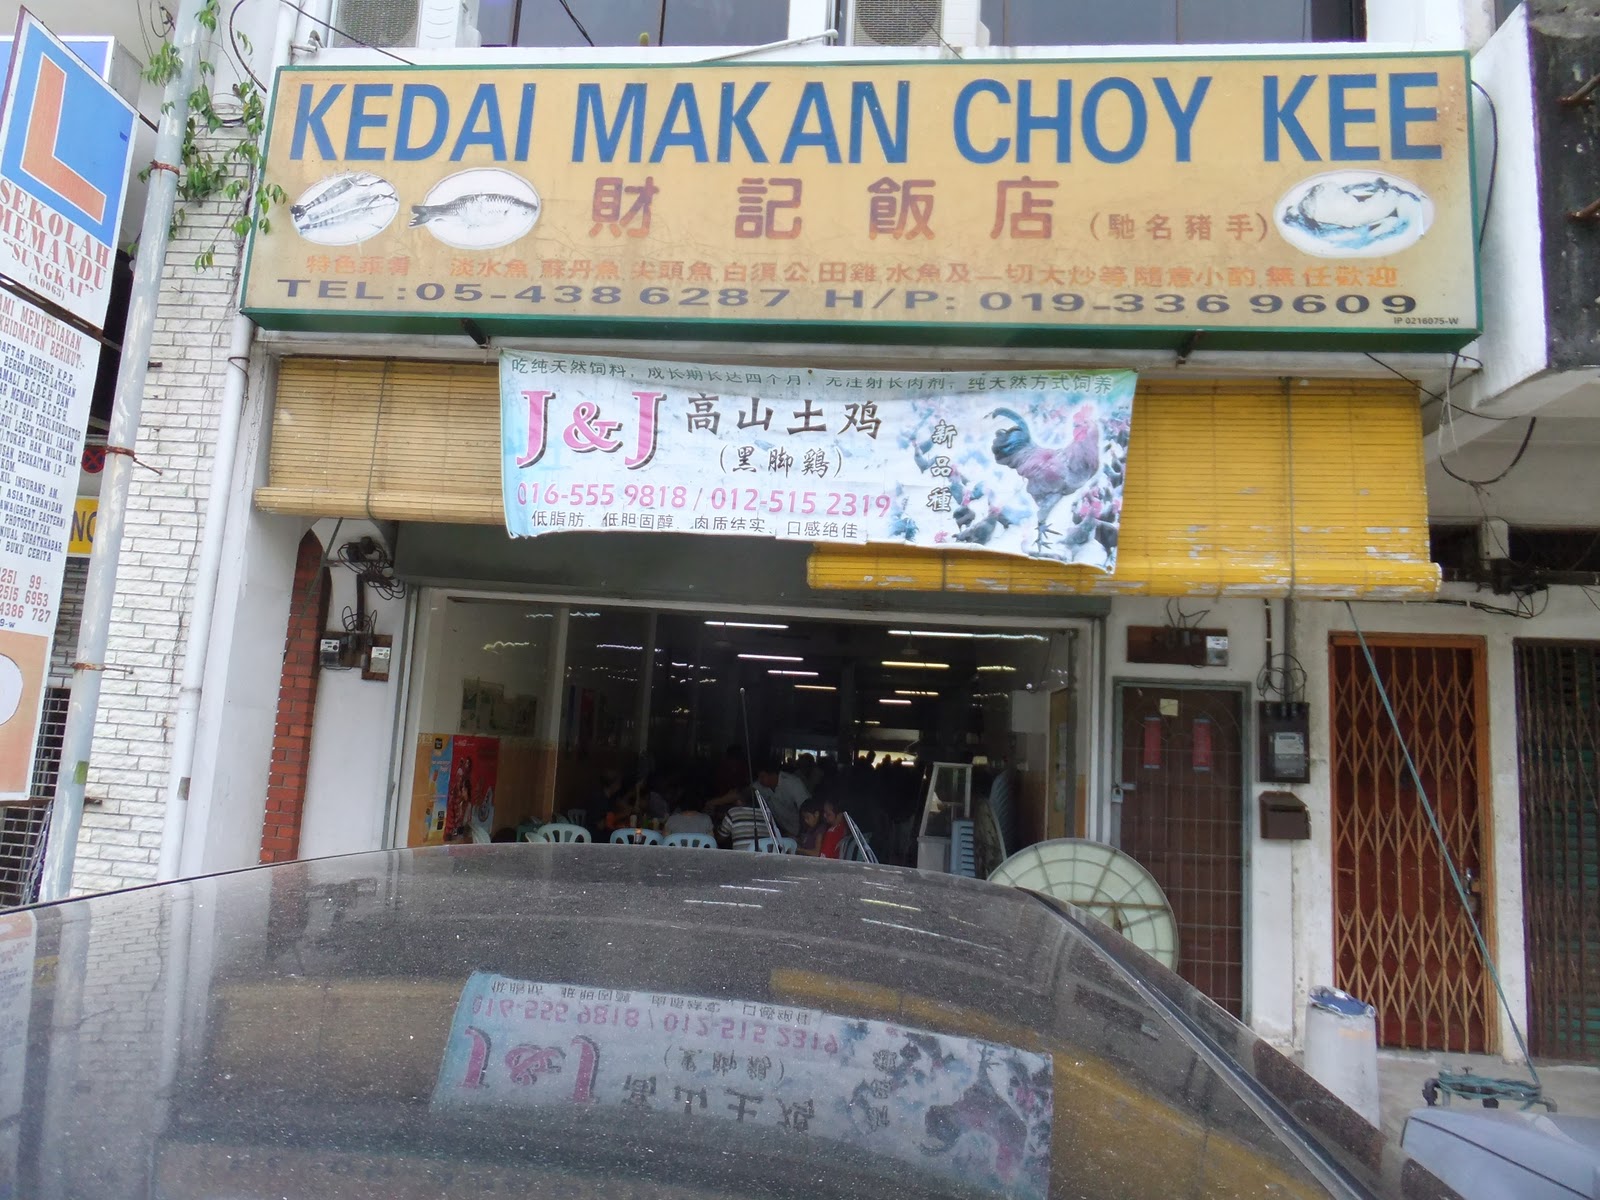 haPpY HaPpY: Kedai Makan Choy Kee @ Sungkai for Braised Pork Knuckle.